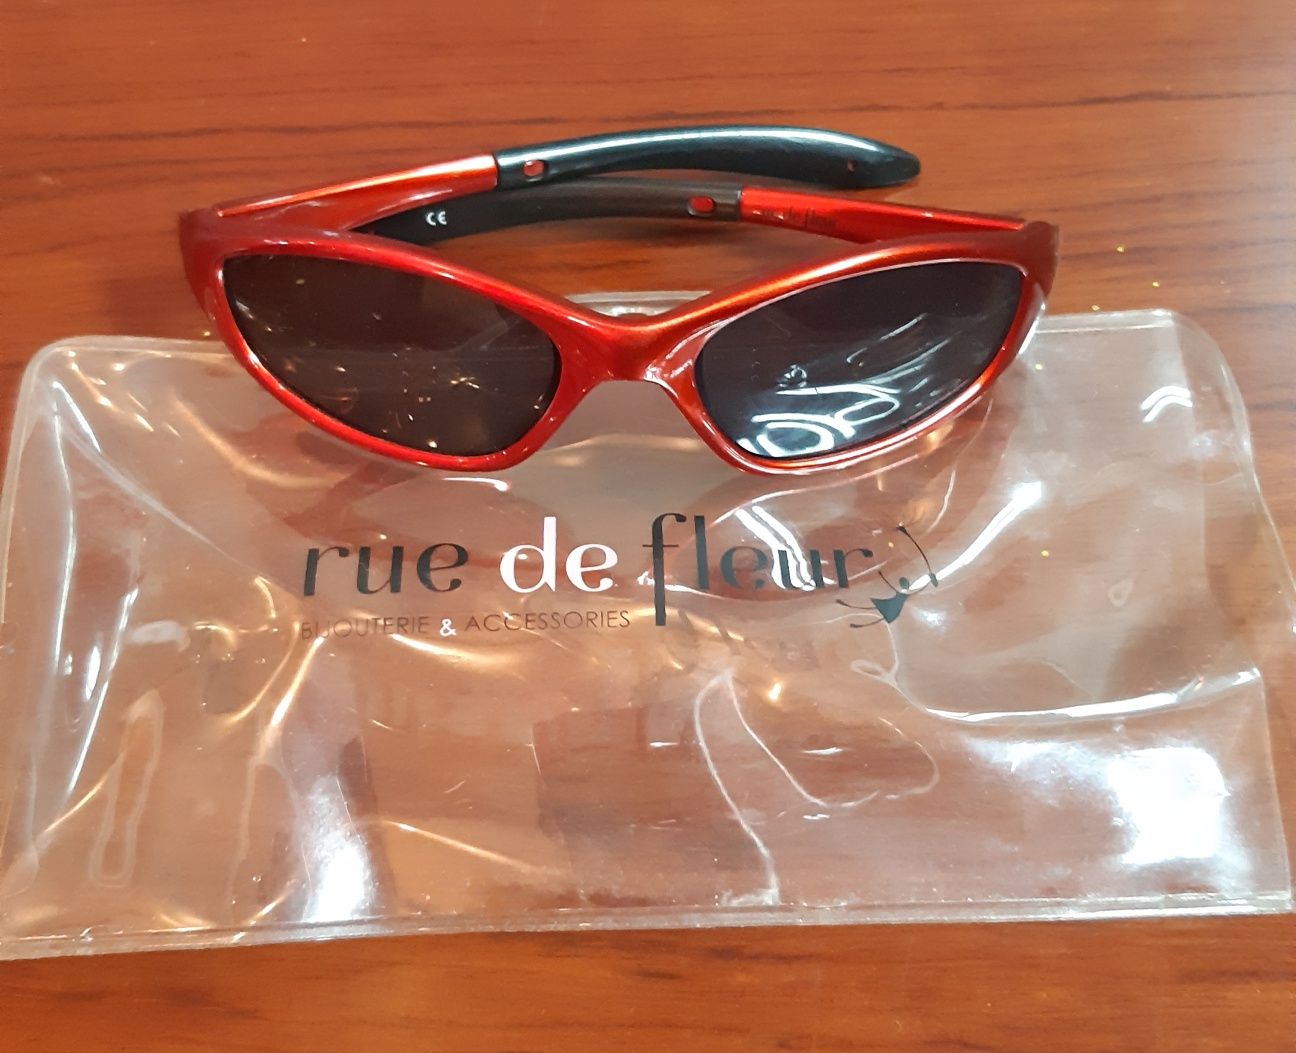 Солнцезащитные очки для детей Rue de fleur.